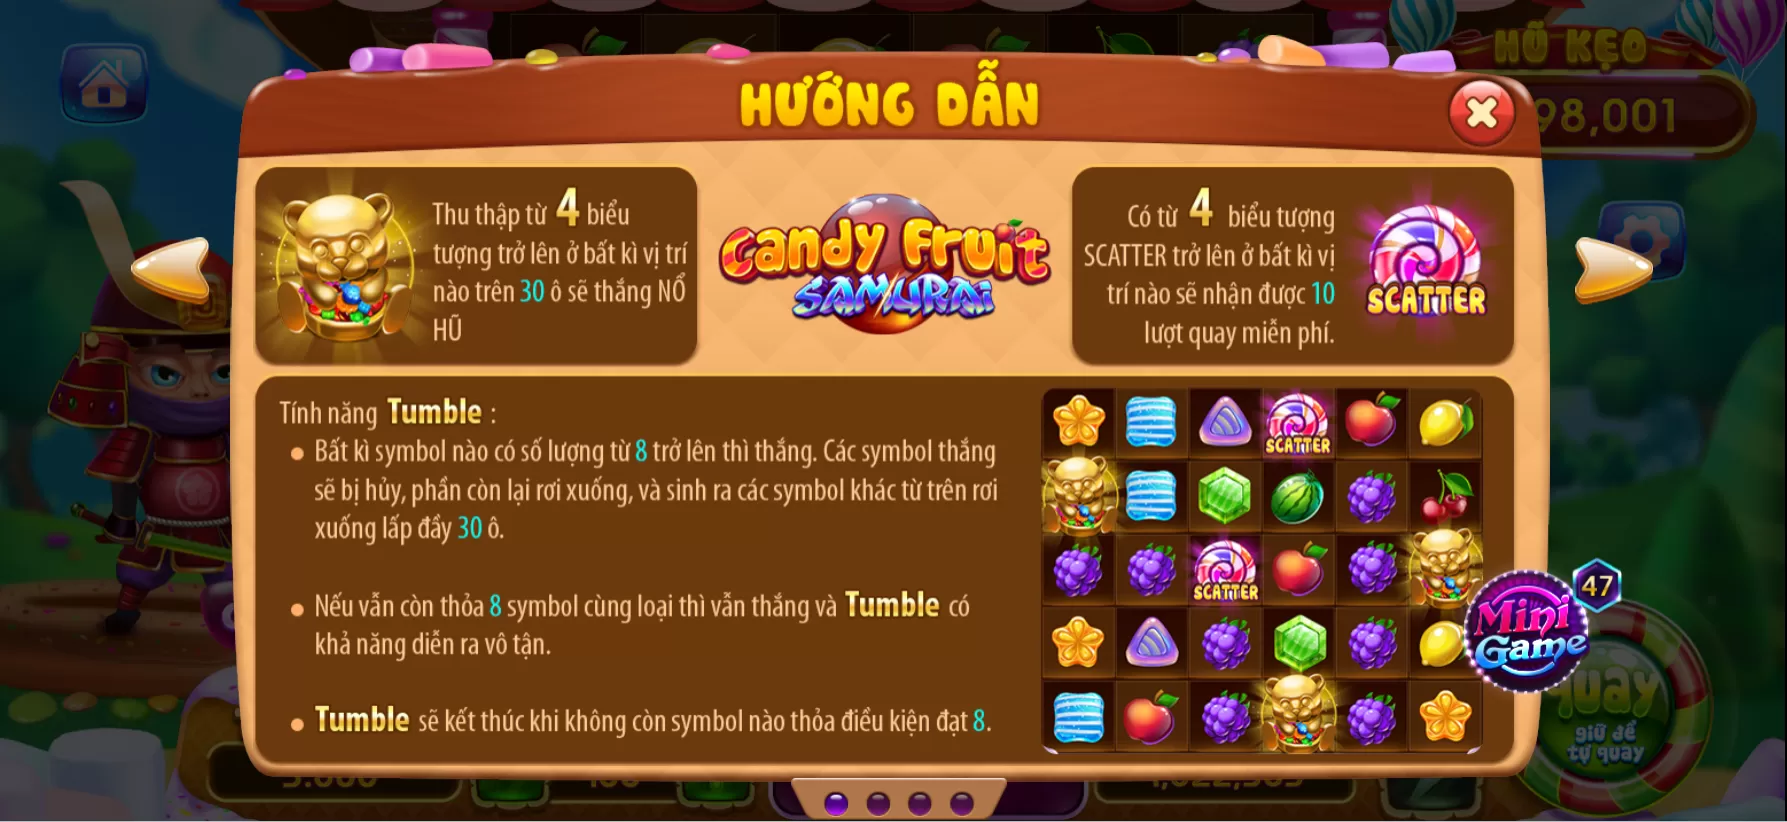 Hướng dẫn chơi game Candy Fruit Samurai trên cổng game Fabet